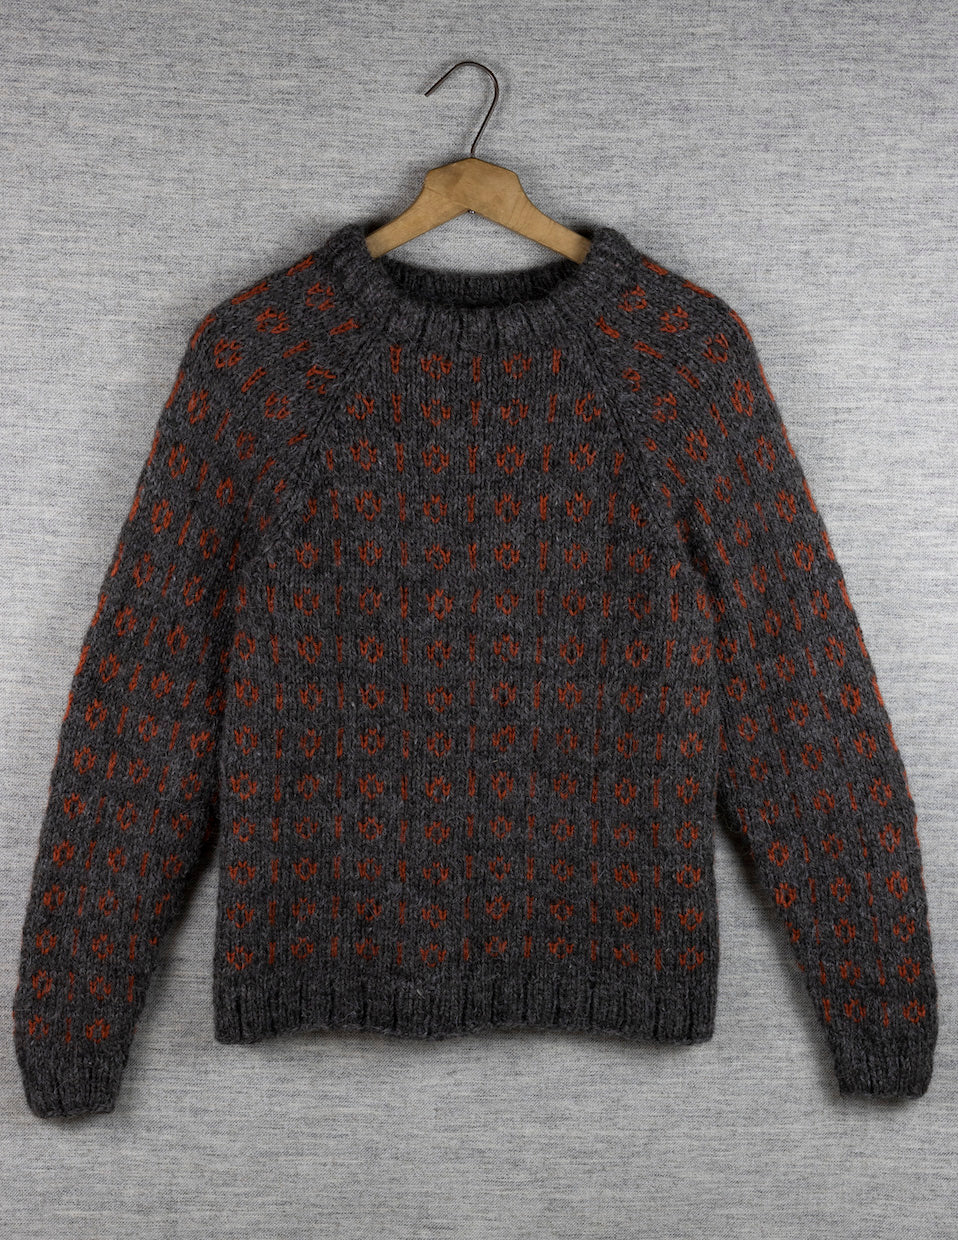 Knut sweater, knitting kit